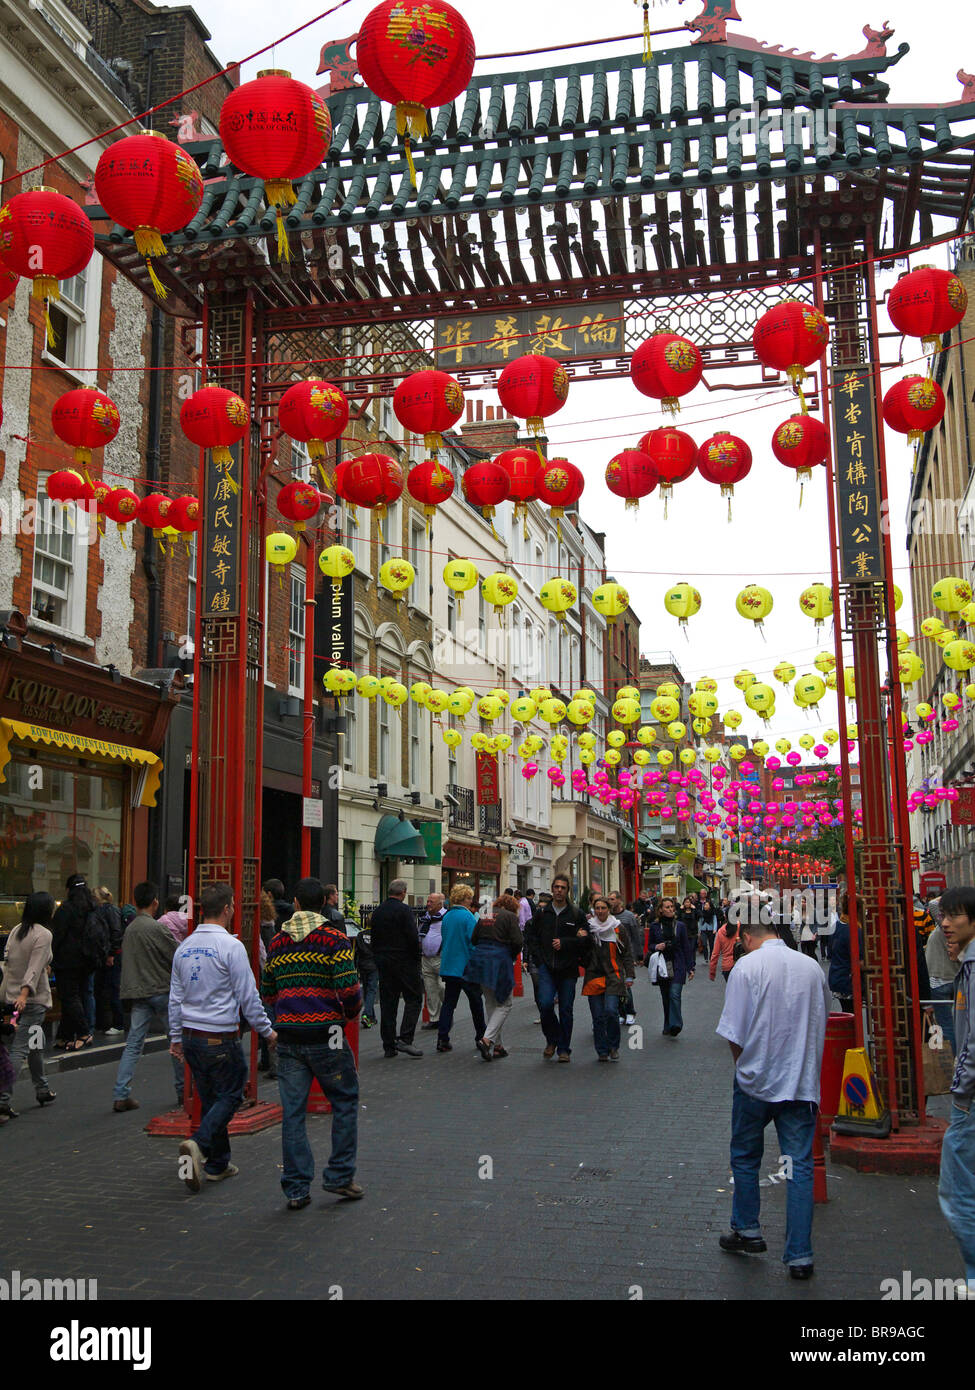 Festival de mi-automne le long de la rue Gerrard Chinatown London UK Banque D'Images